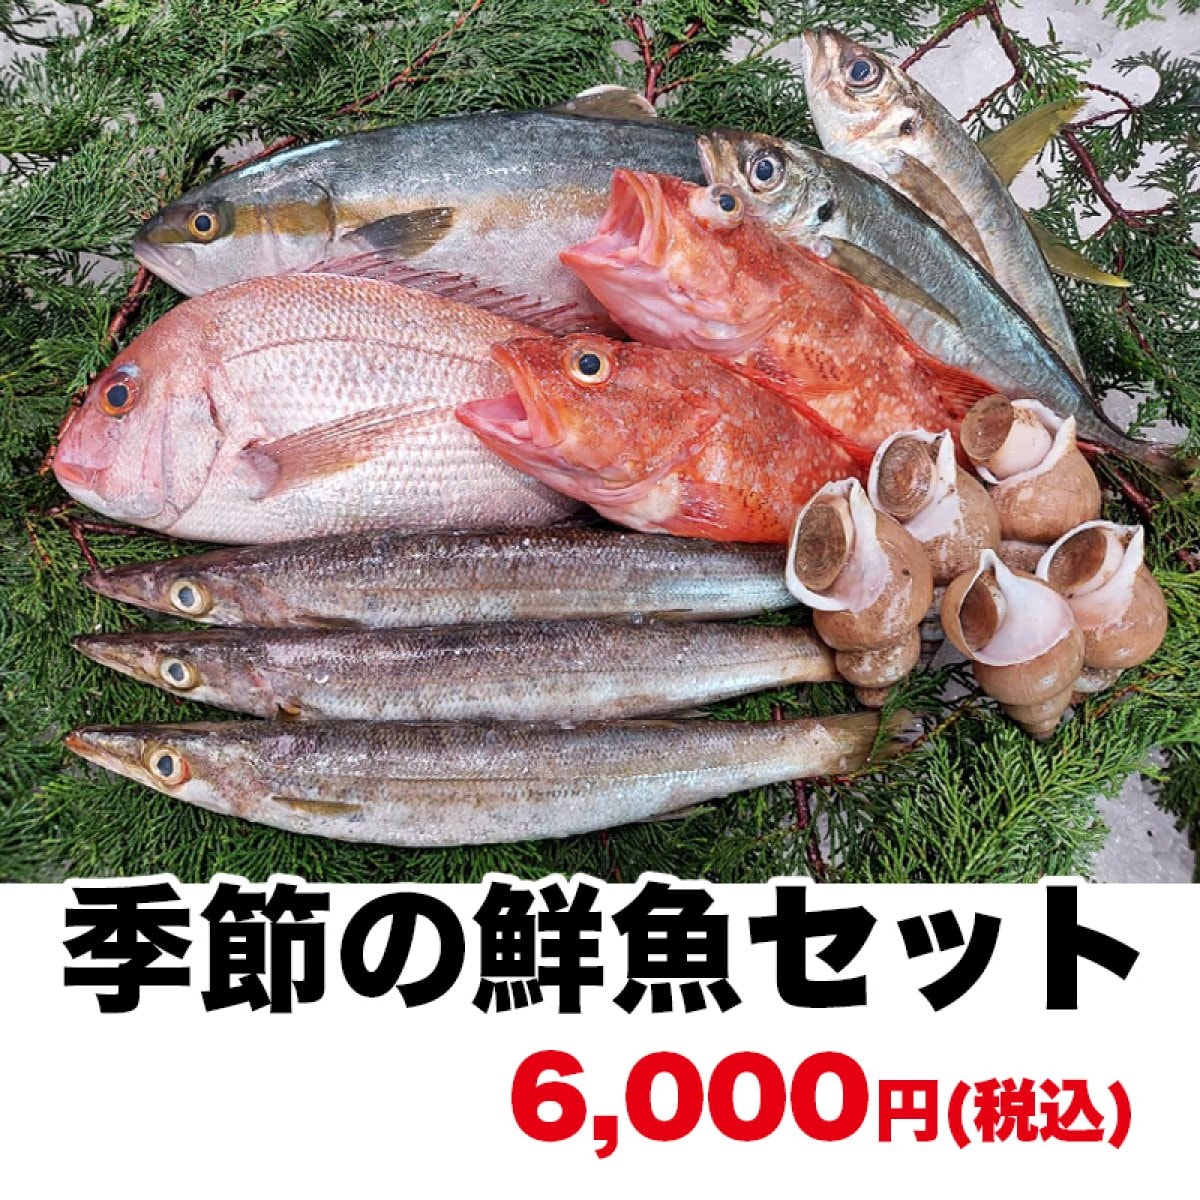 お値打ち♪朝どれ!日本海の鮮魚セット/下処理もプロにお任せください！6000円